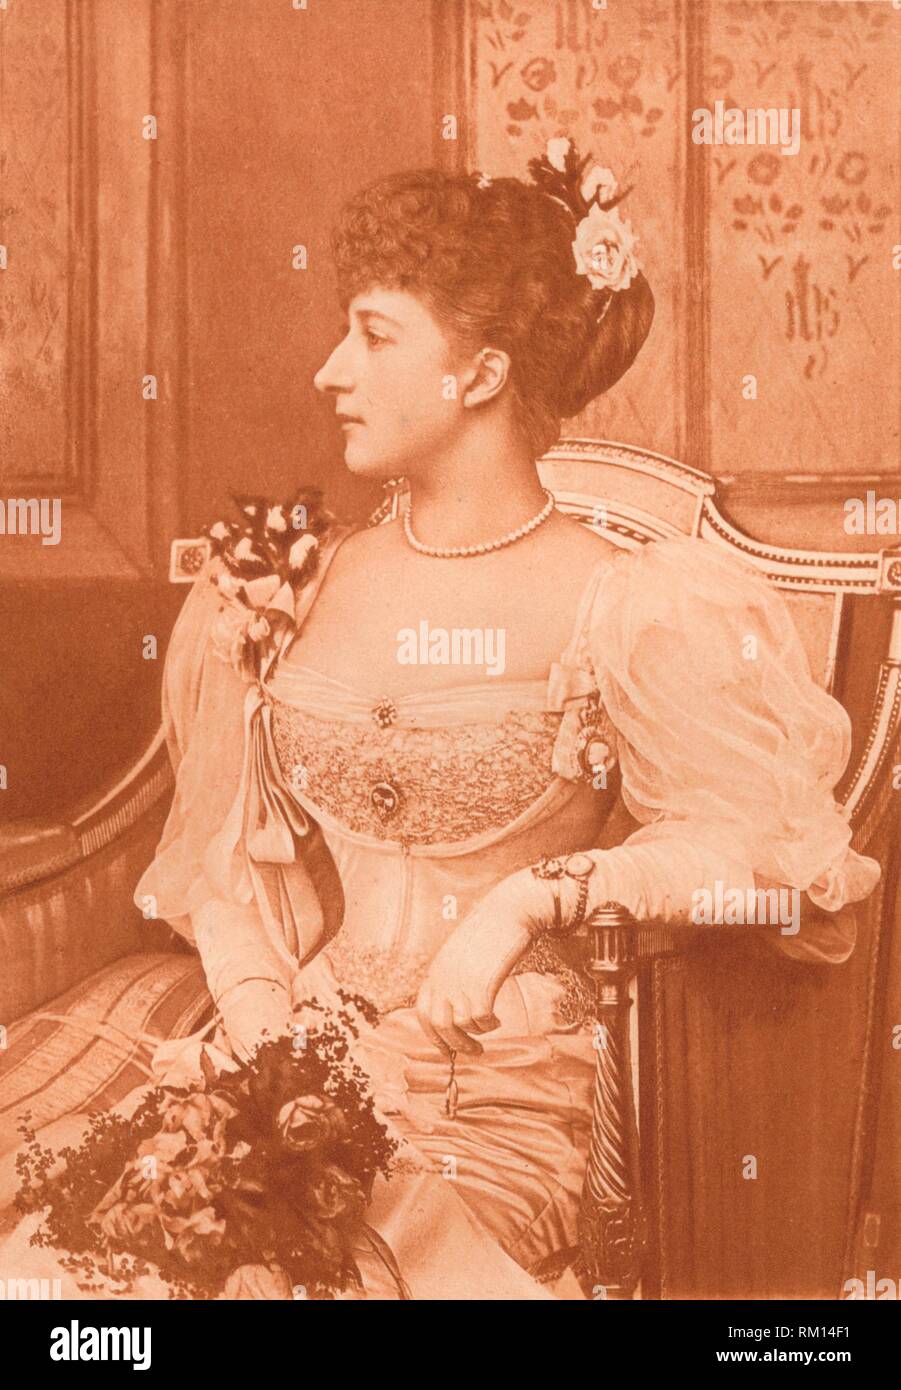 'S.A.R. la Princesse Maud de Galles', c1900.  Creator: Paul Dujardin. Stock Photo